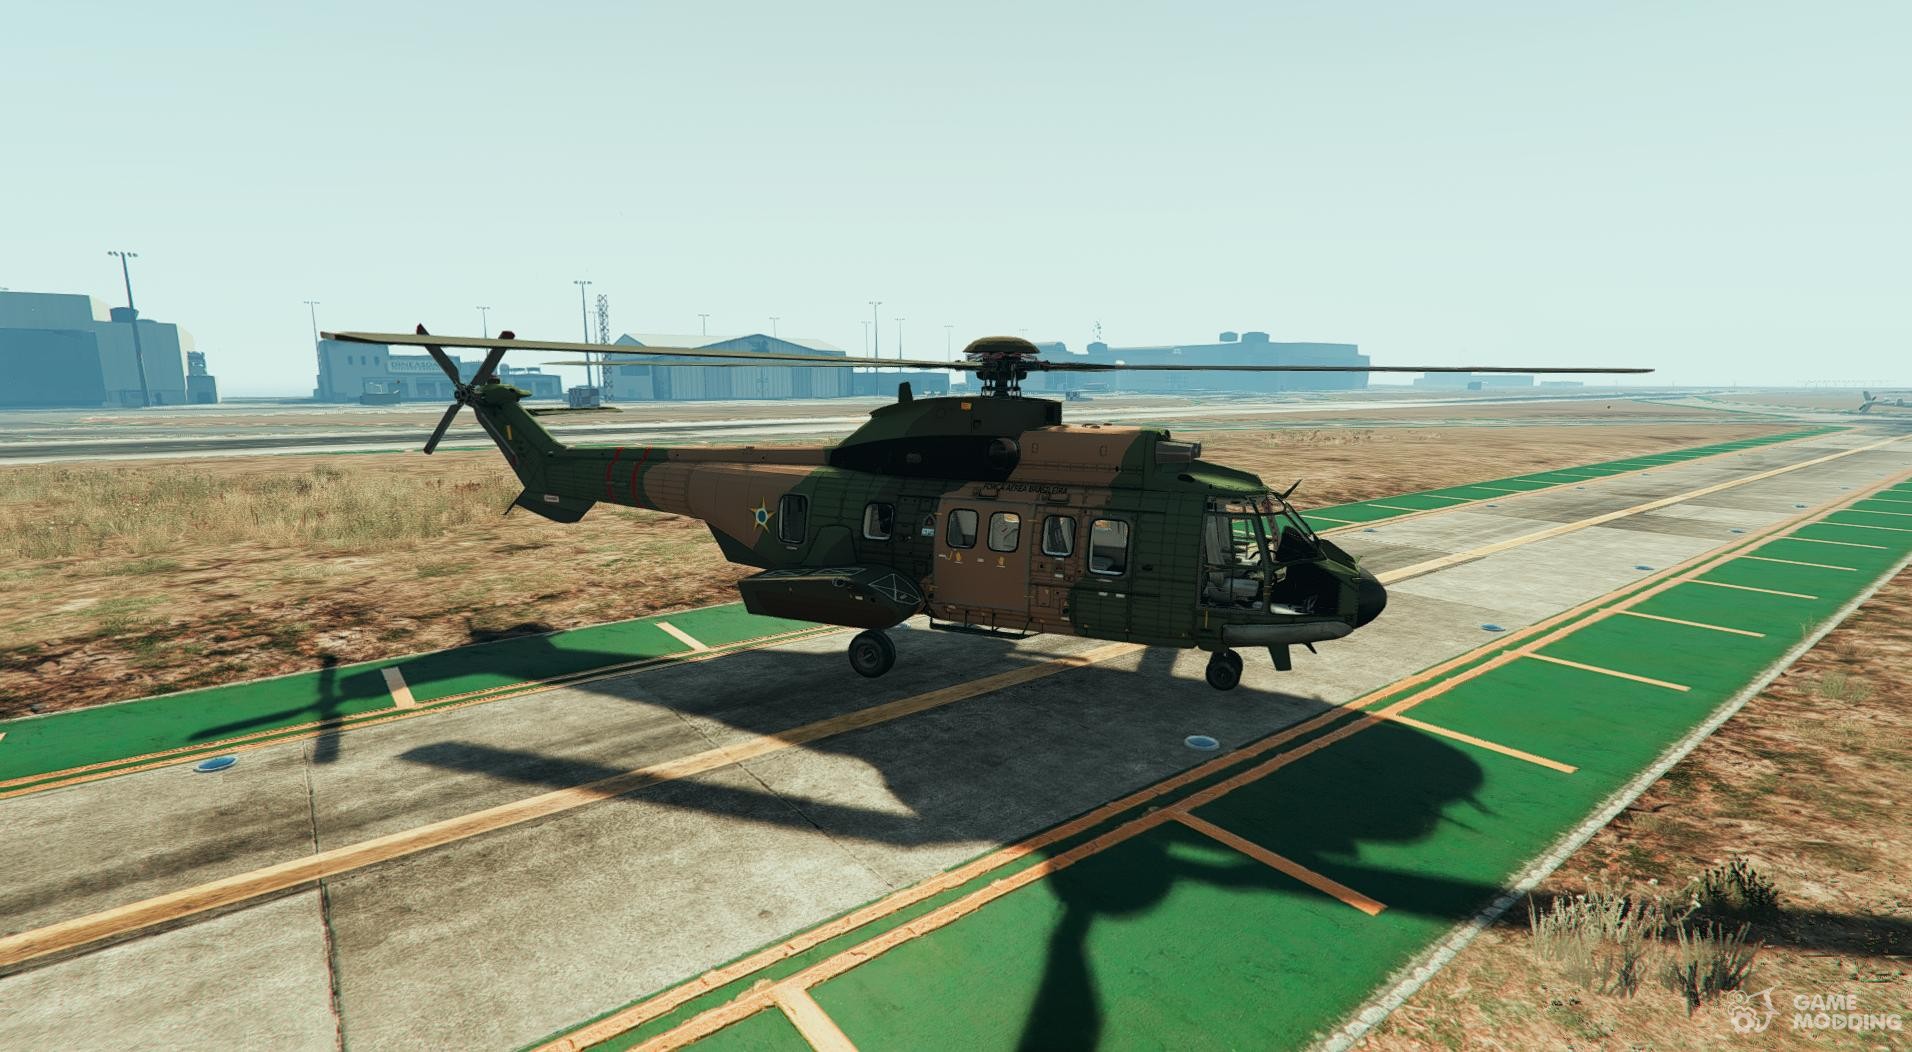 Escarpado Asistir Hablar en voz alta Eurocopter AS-332 Super Puma GTA V para GTA 5